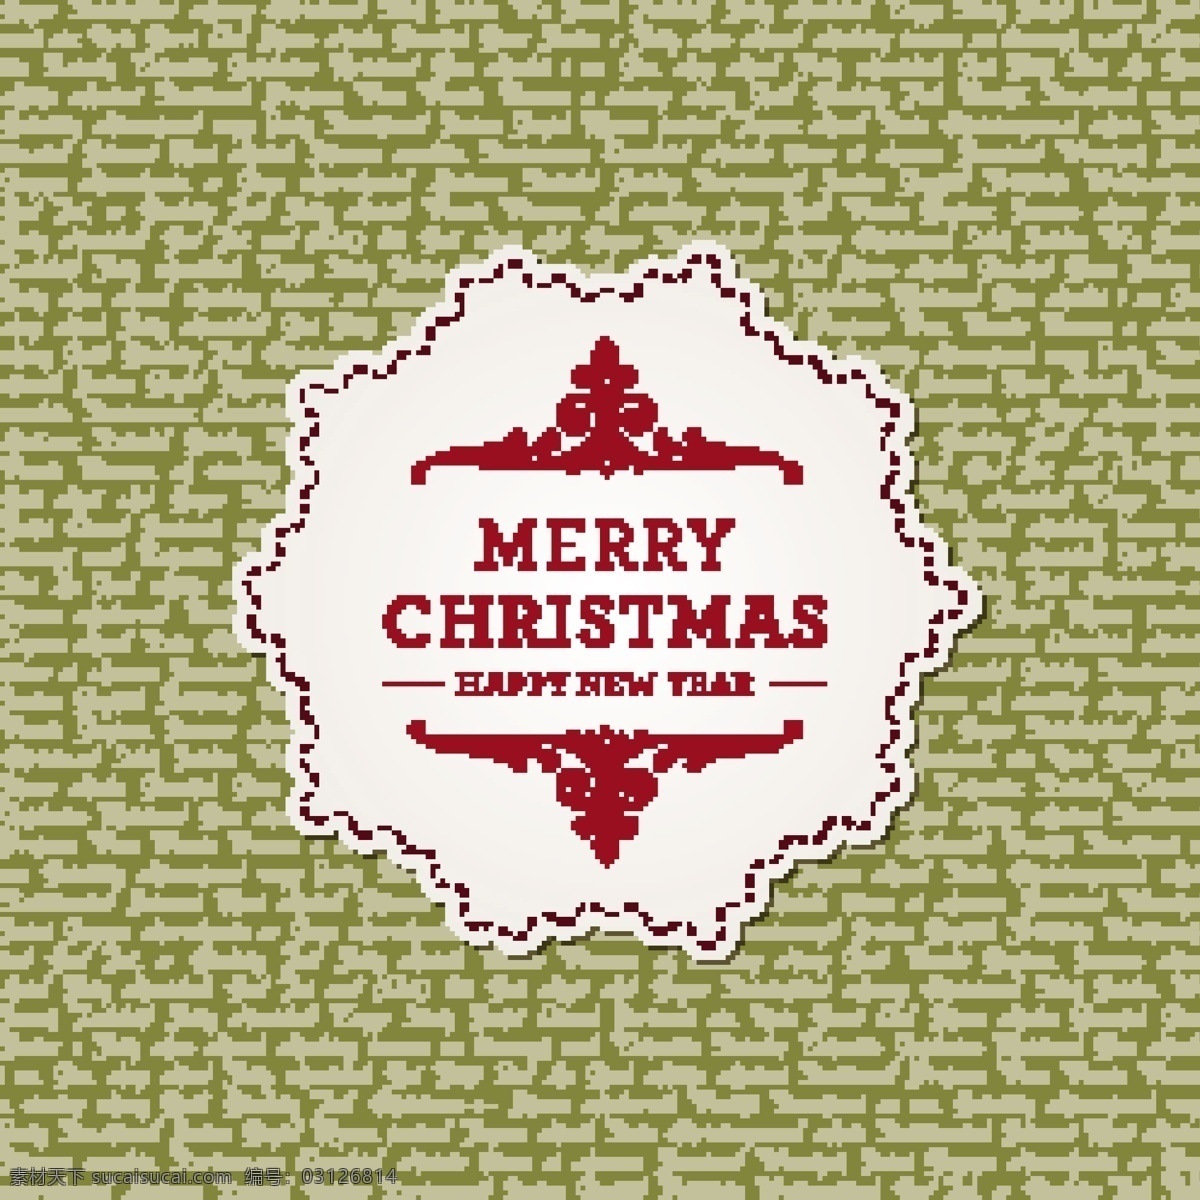 边框 底纹 花边 节日素材 欧式花纹 圣诞 圣诞海报 圣诞节 矢量 欧式 背景 圣诞素材 卡片贺卡背景 圣诞主题 海报背景图